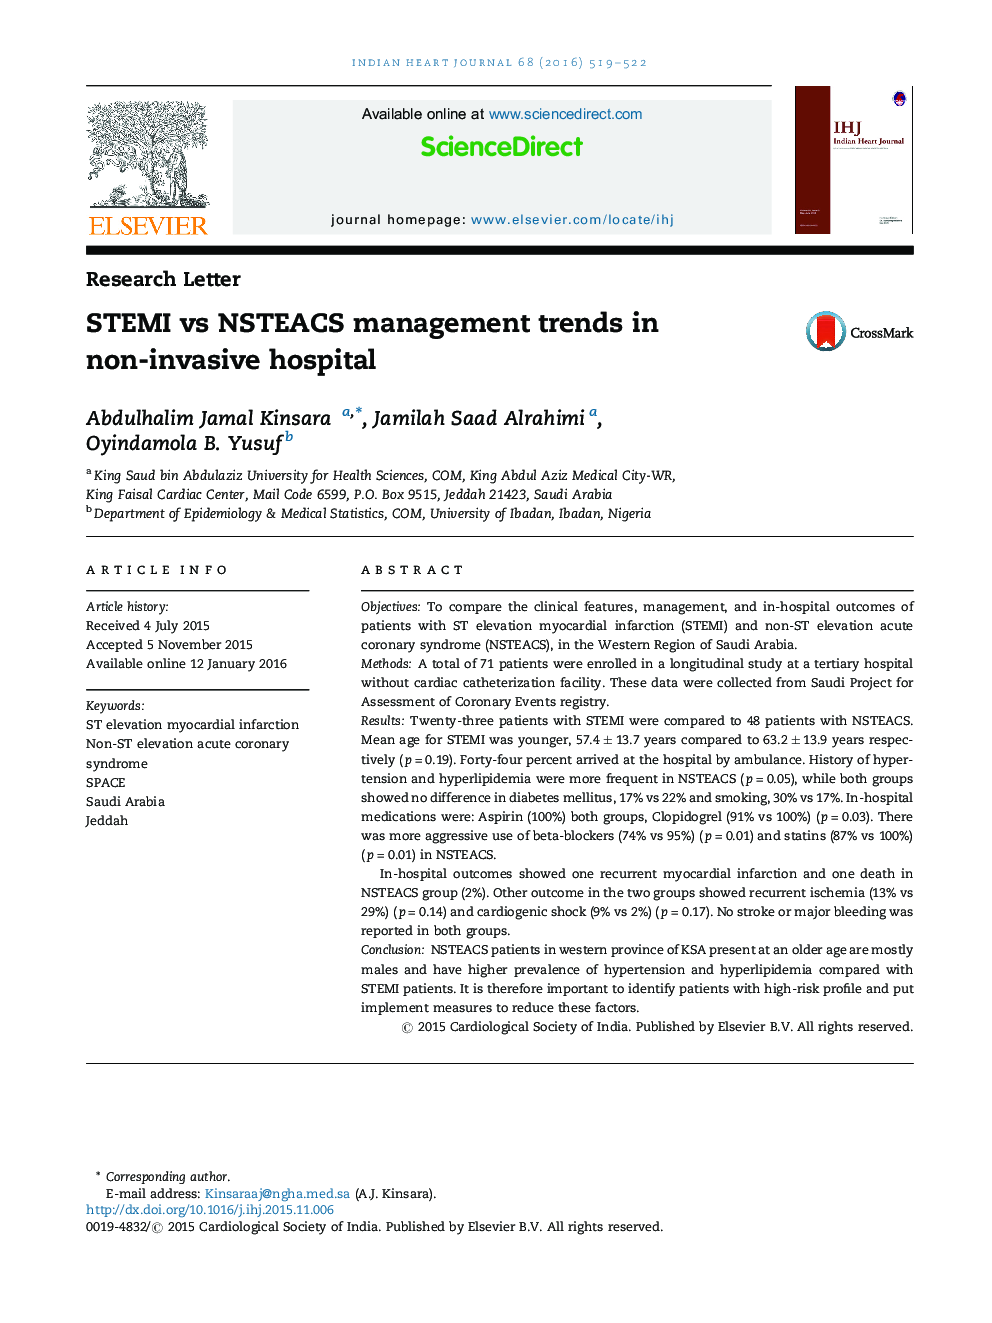 STEMI vs NSTEACS management trends in non-invasive hospital